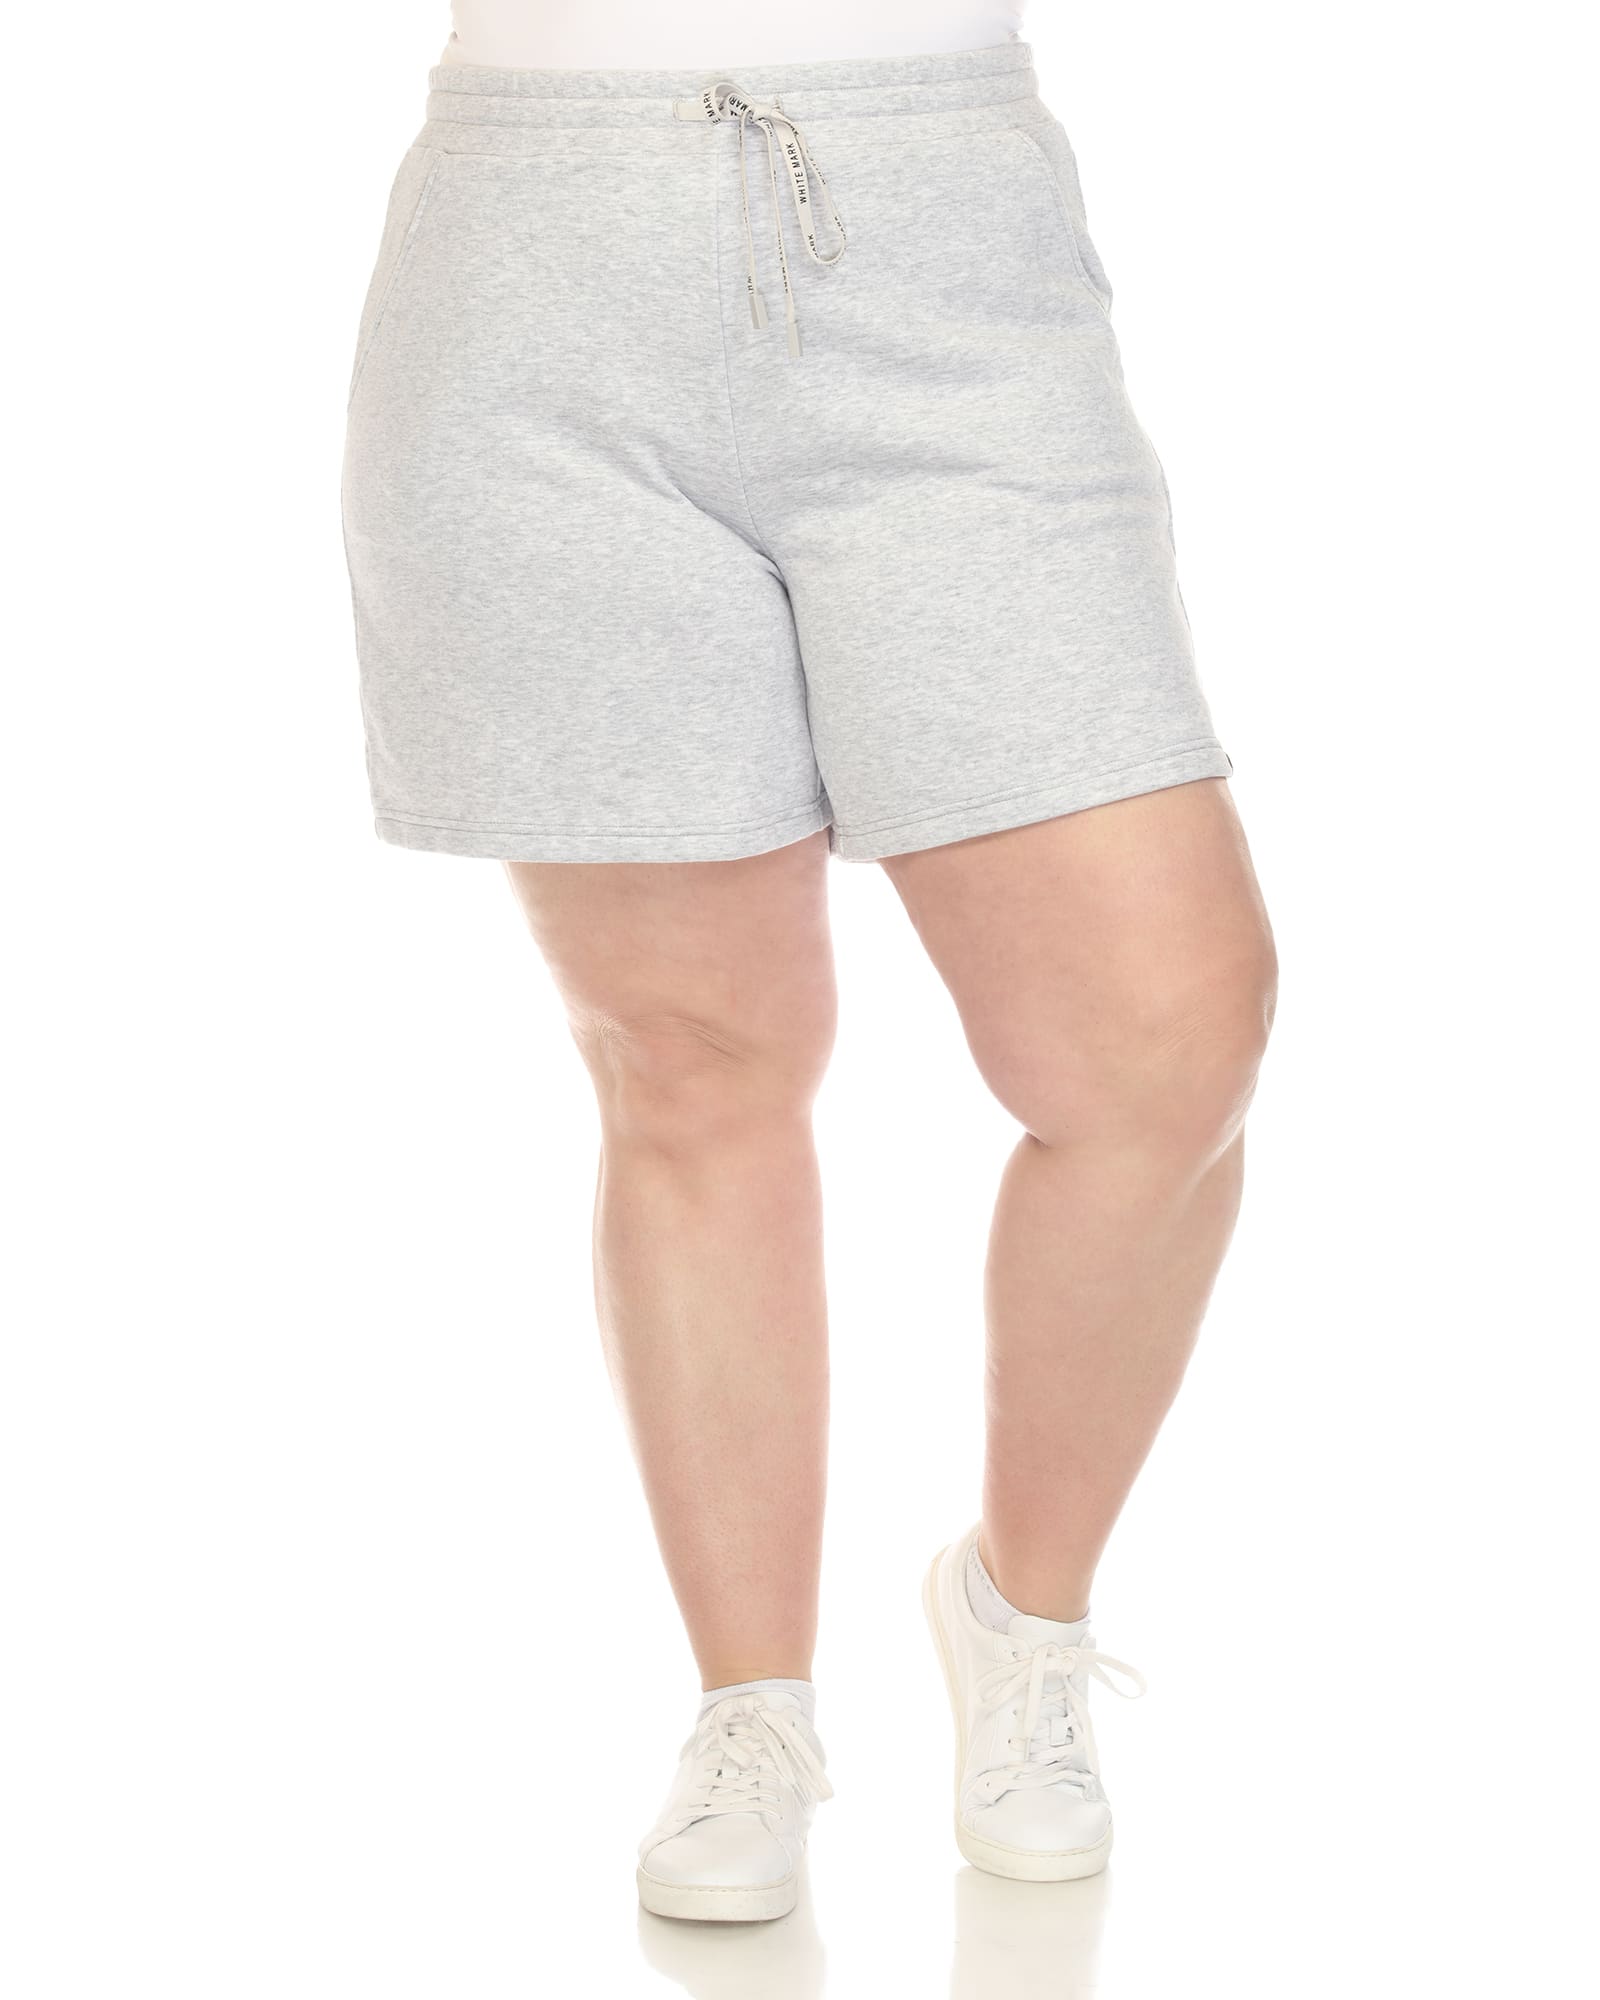 Buff Bunny Shorts Gray Size Medium Pockets Comfort Drawstring